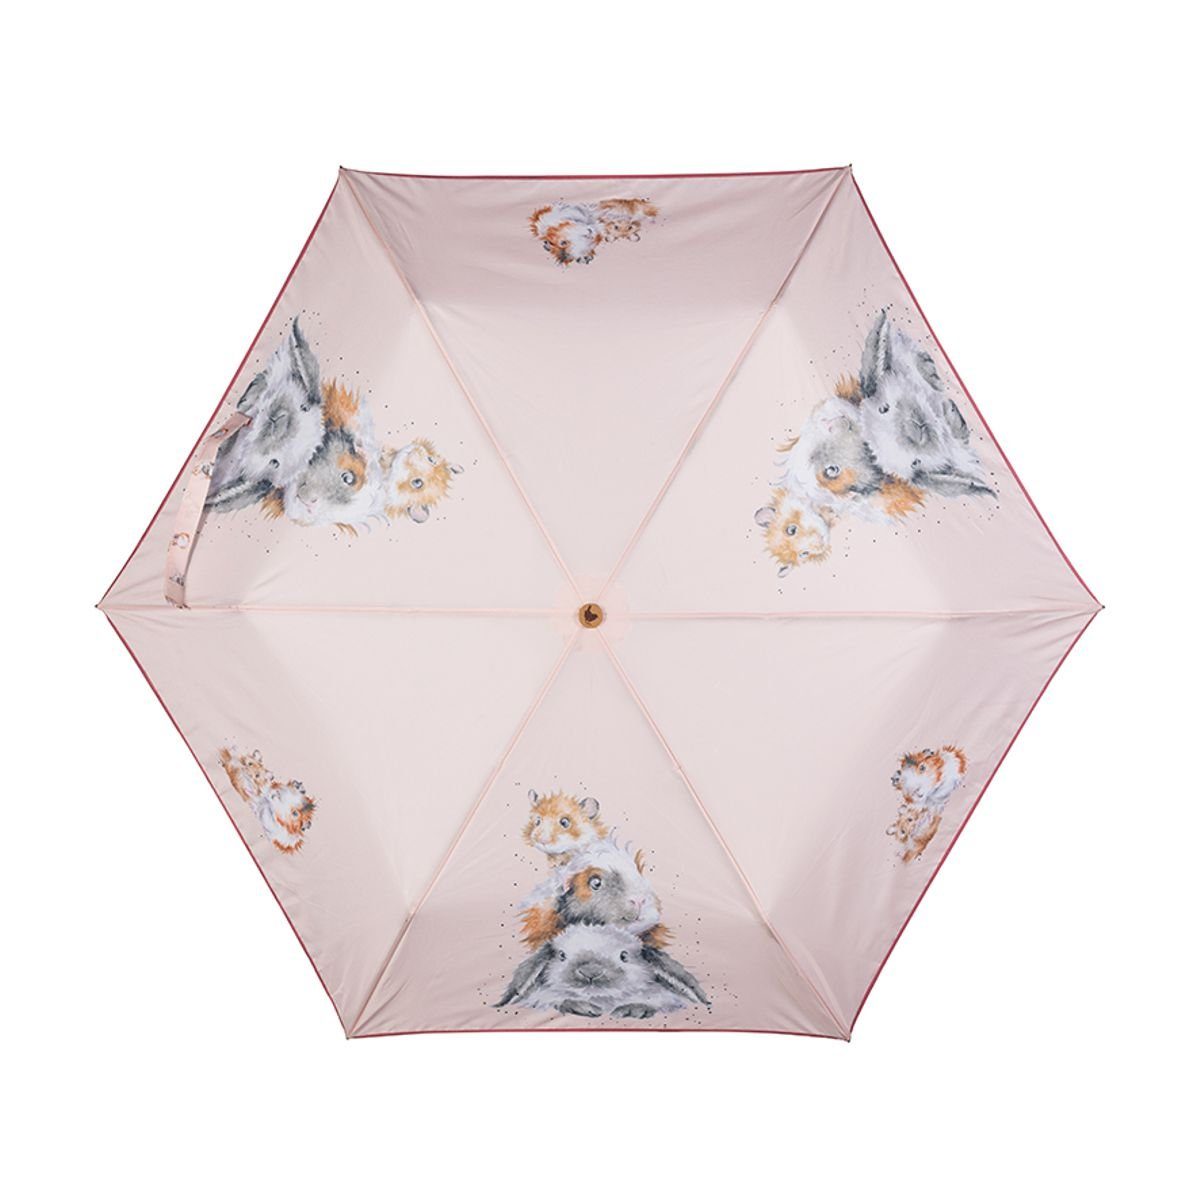 Wrendale Taschenregenschirm Wrendale Designs Taschen-Regenschirm Hase Piggy und seine Freunde